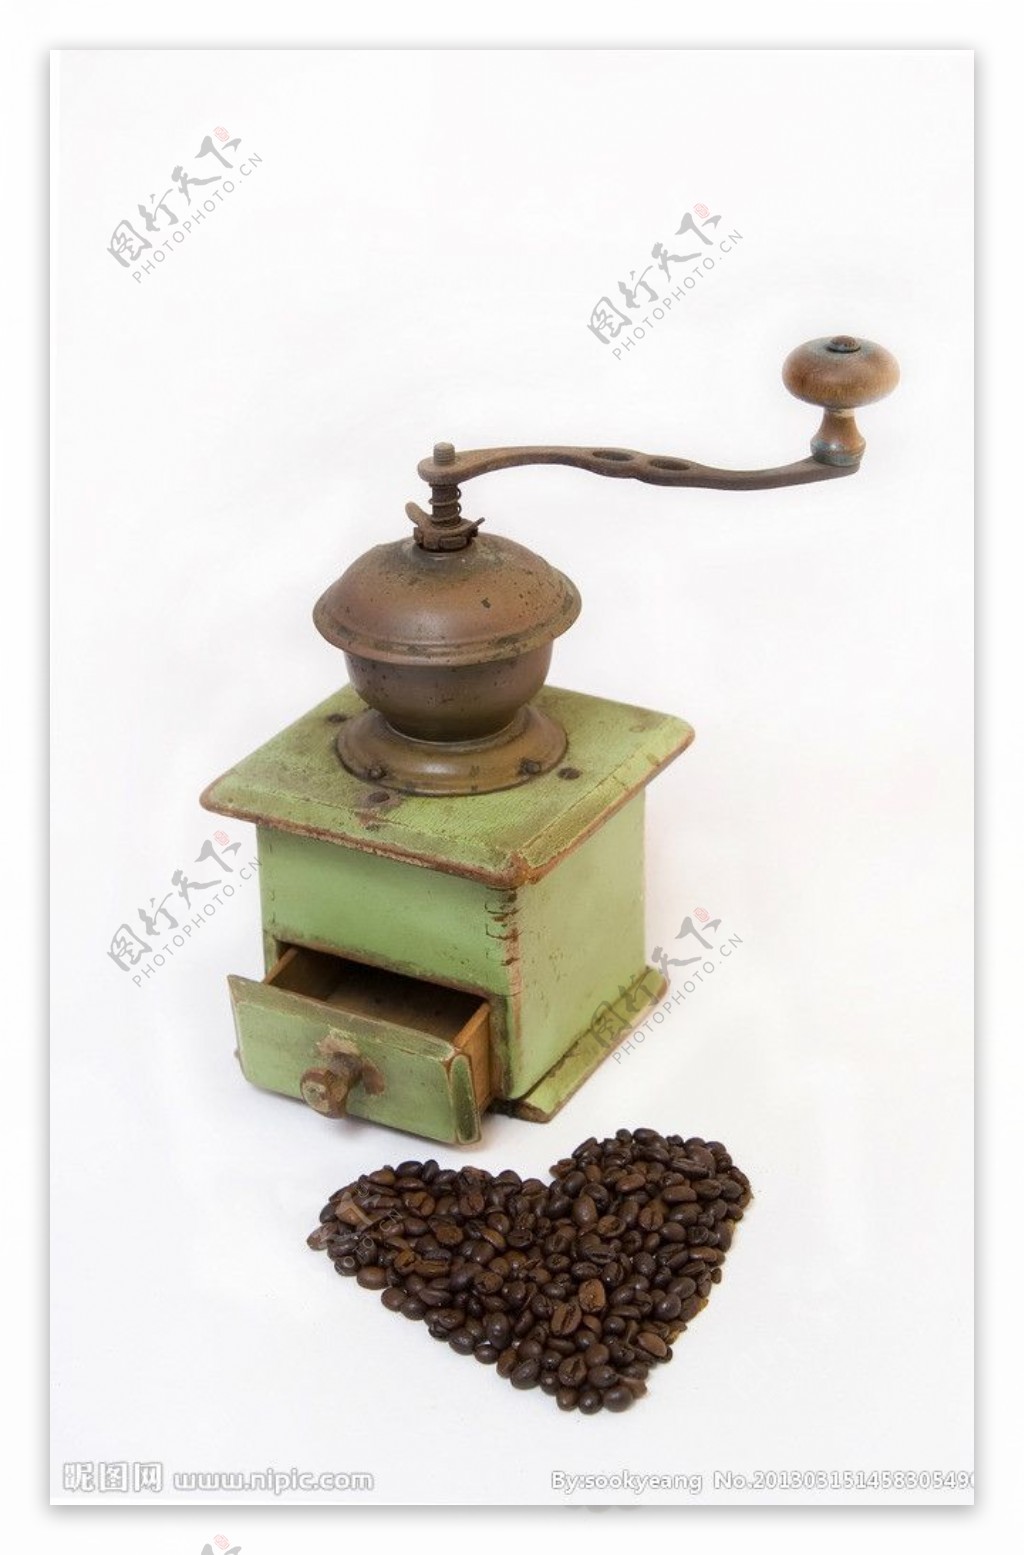 咖啡研磨机图片